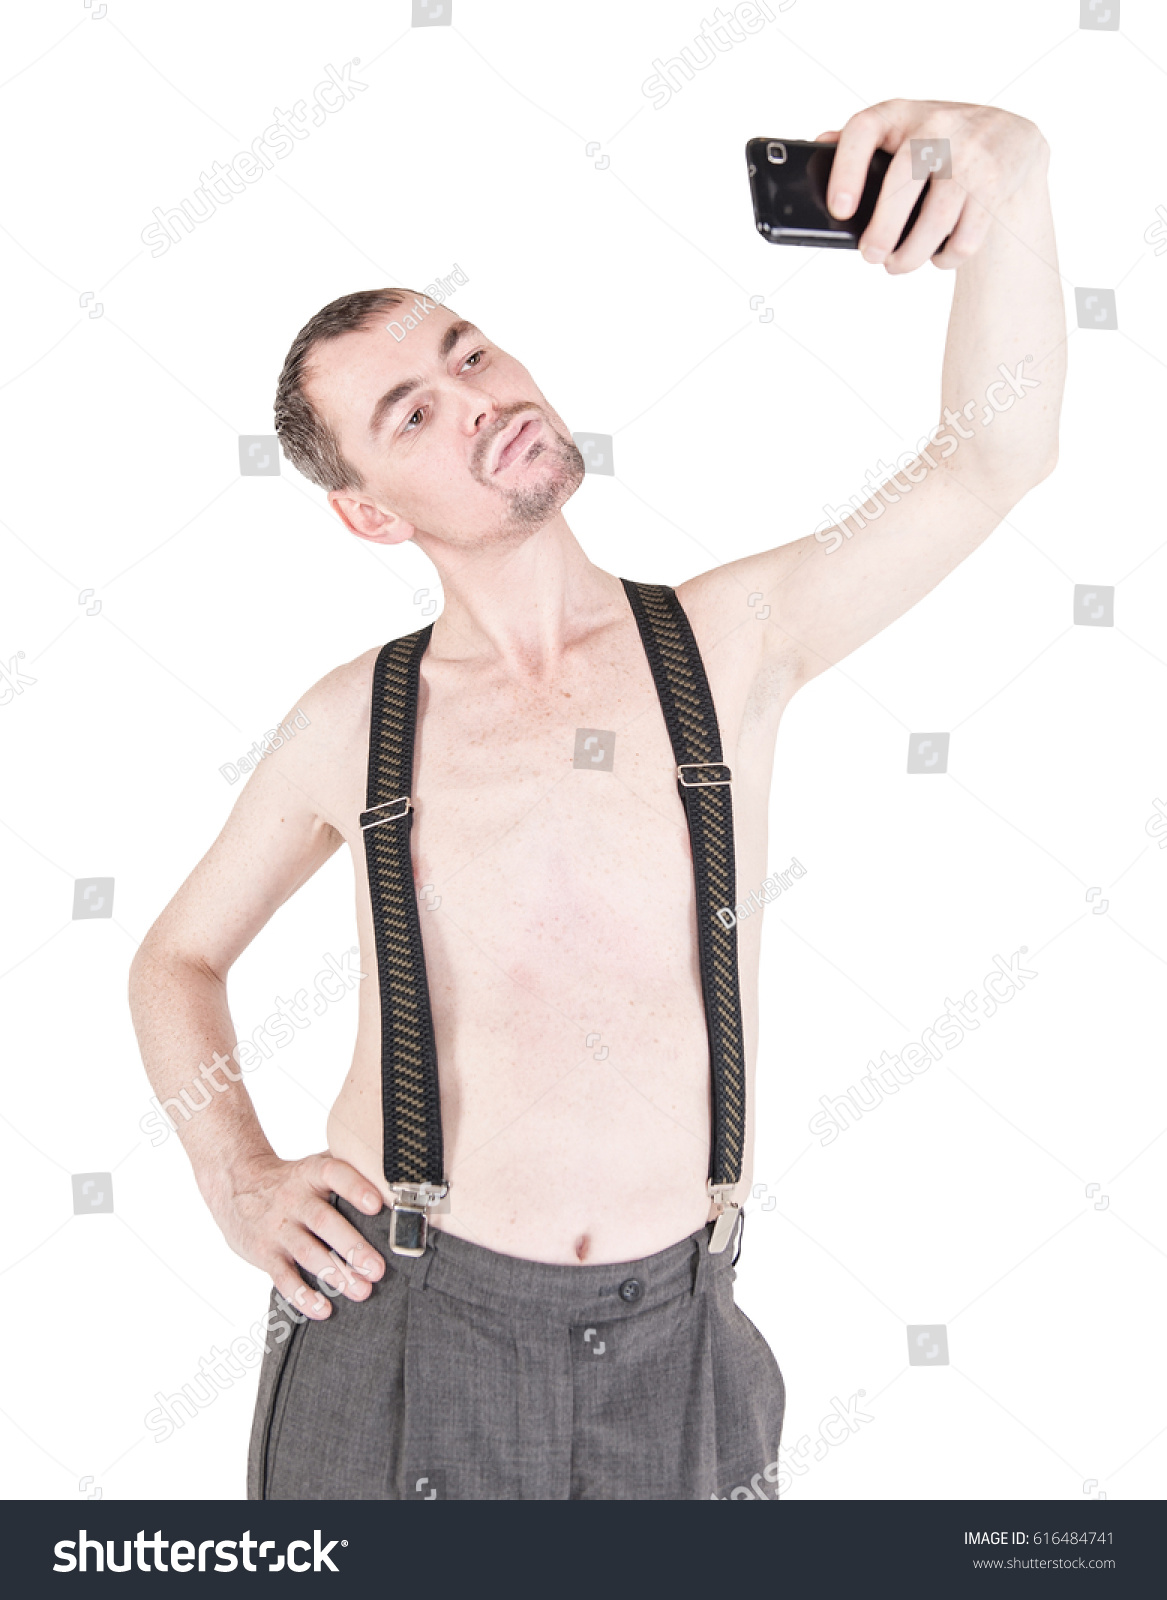 naked muscle men selfies